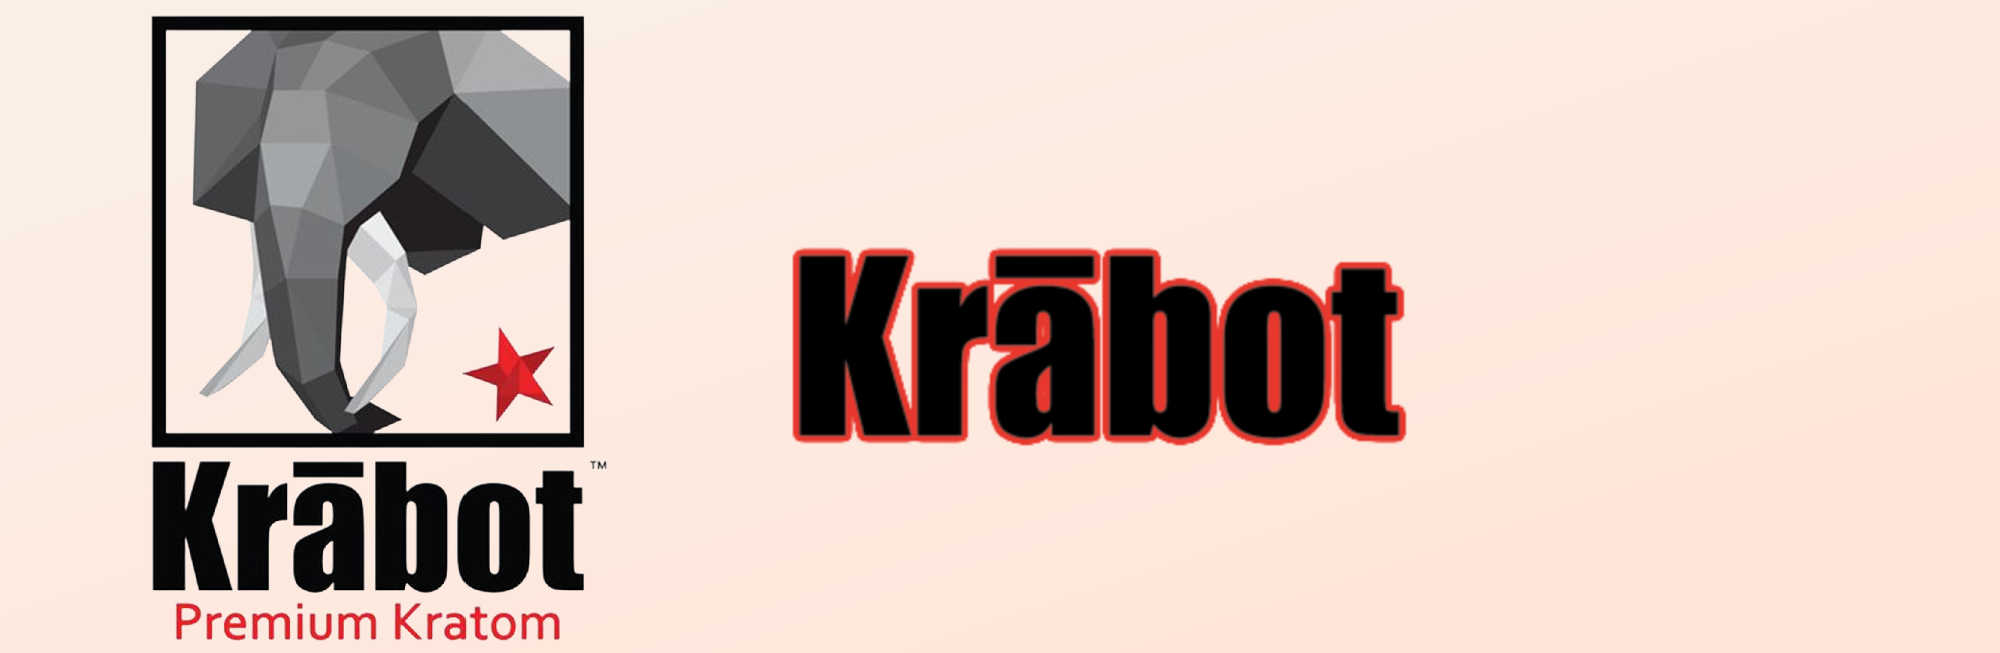 image of krabot kratom logo